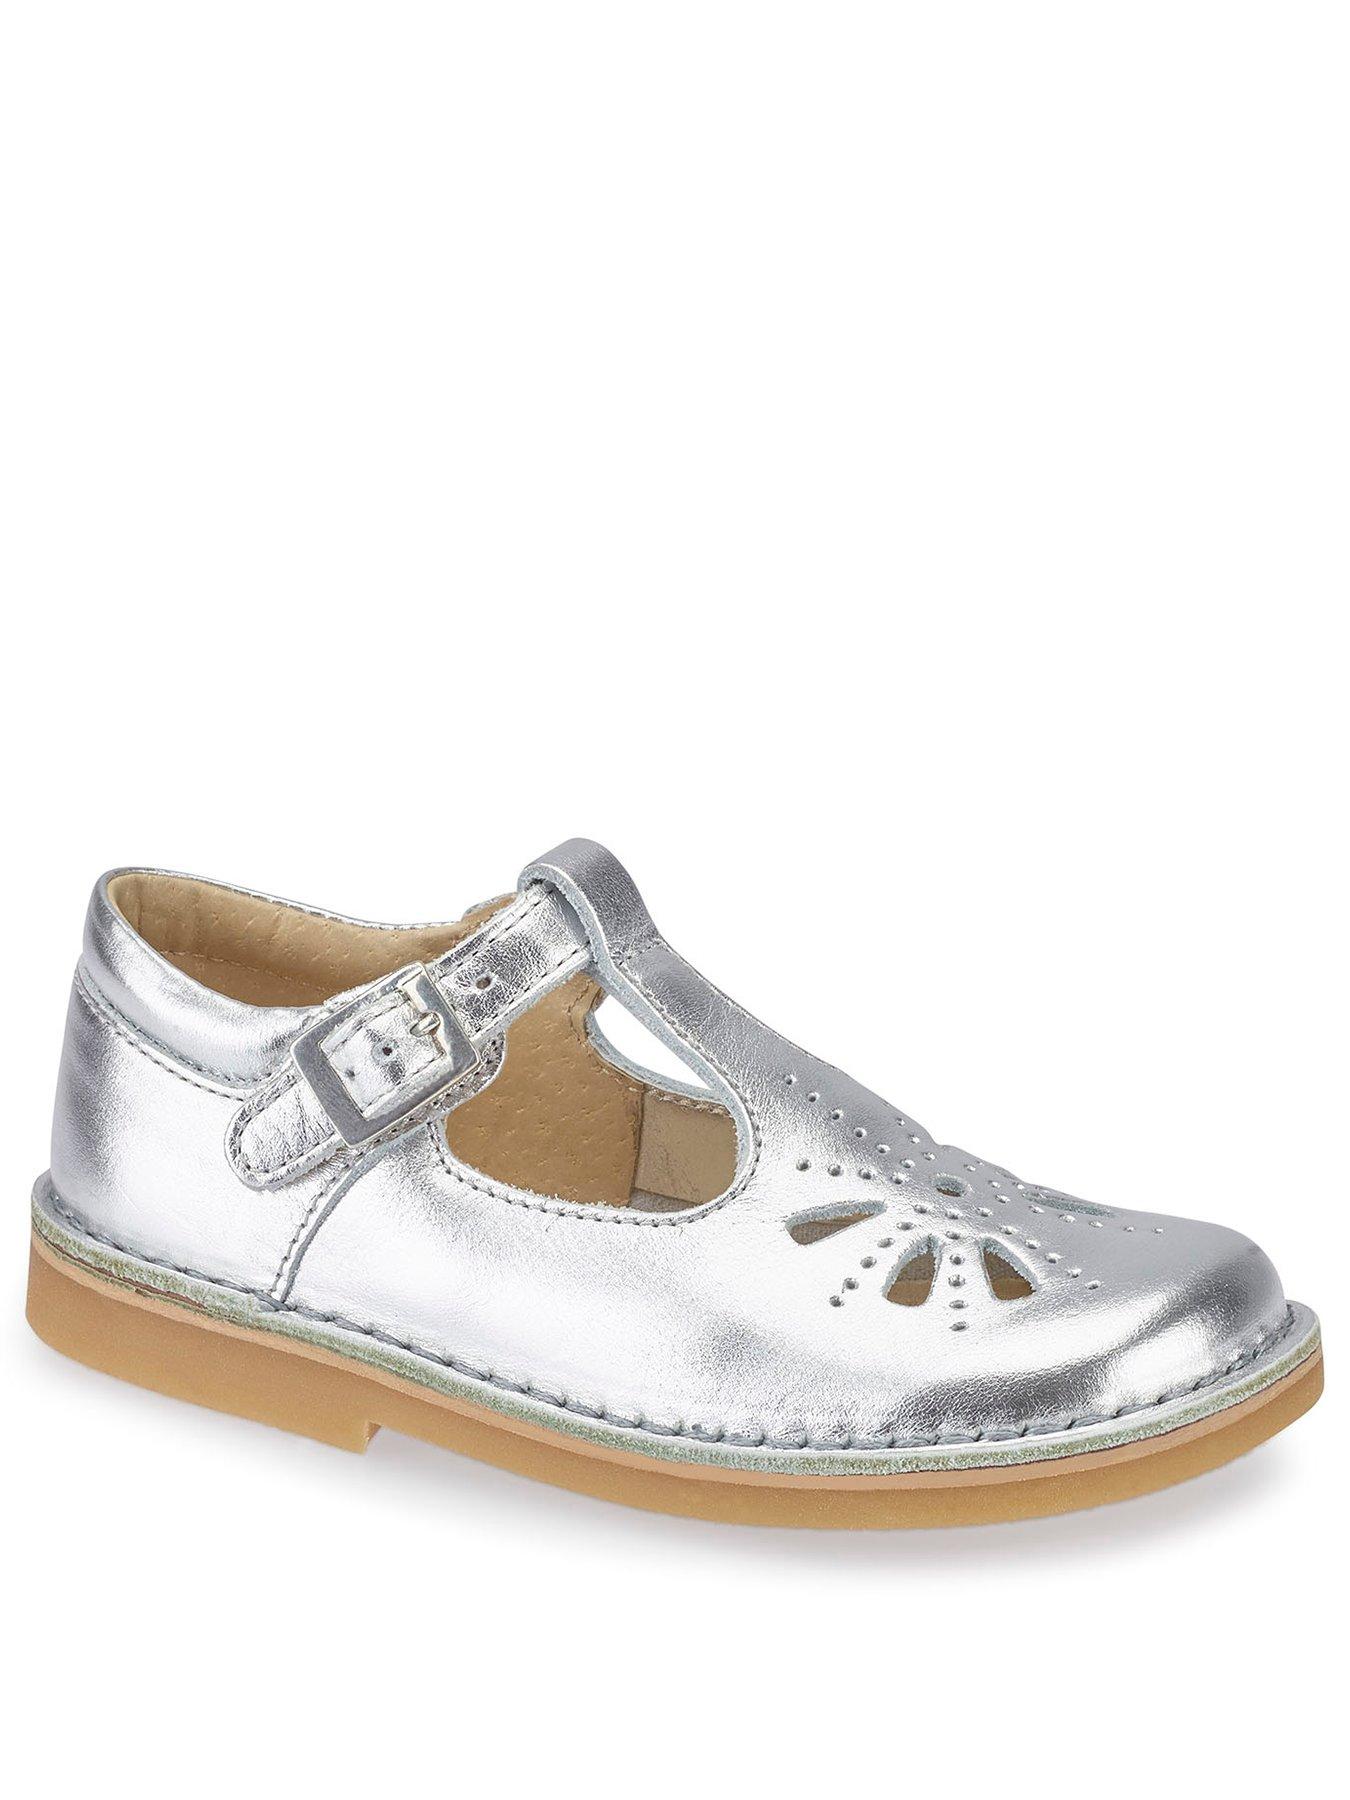  Girls Lottie T-bar Shoes - Silver